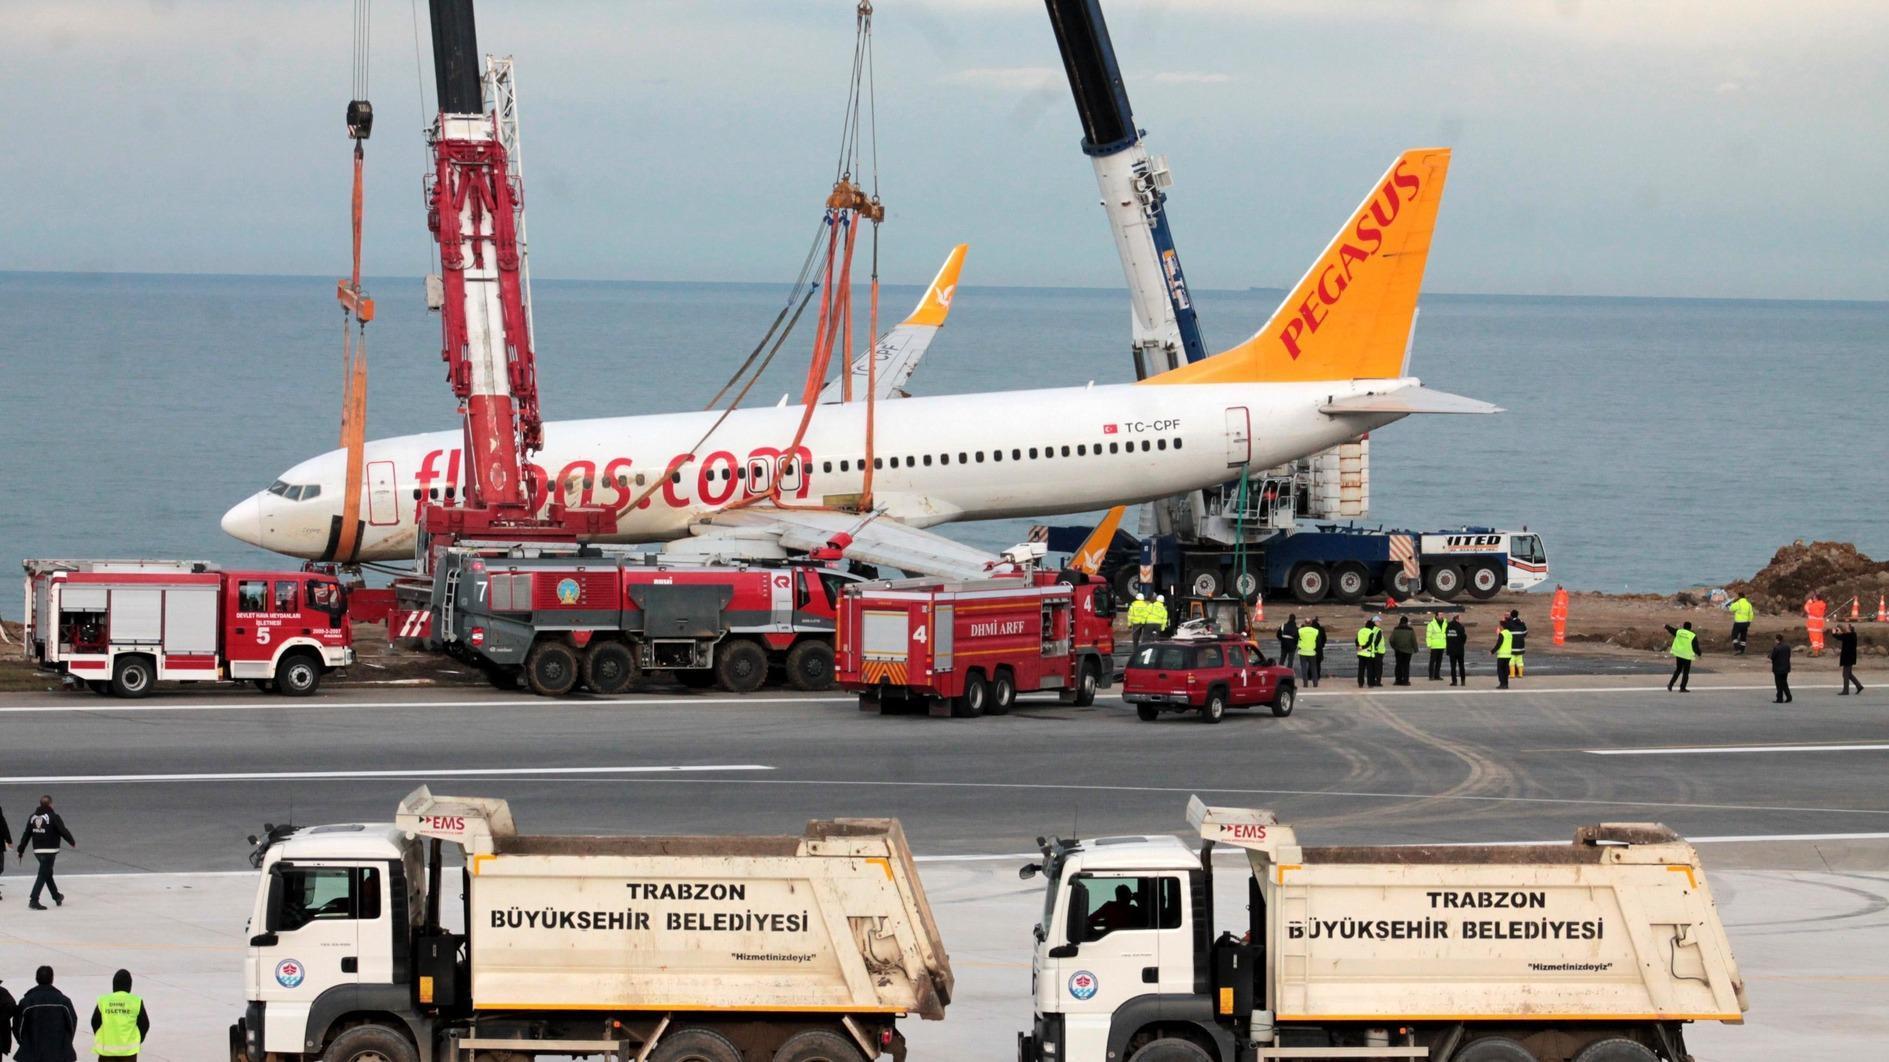 Piloten beschuldigen elkaar in het vliegtuigcrashproces in Trabzon